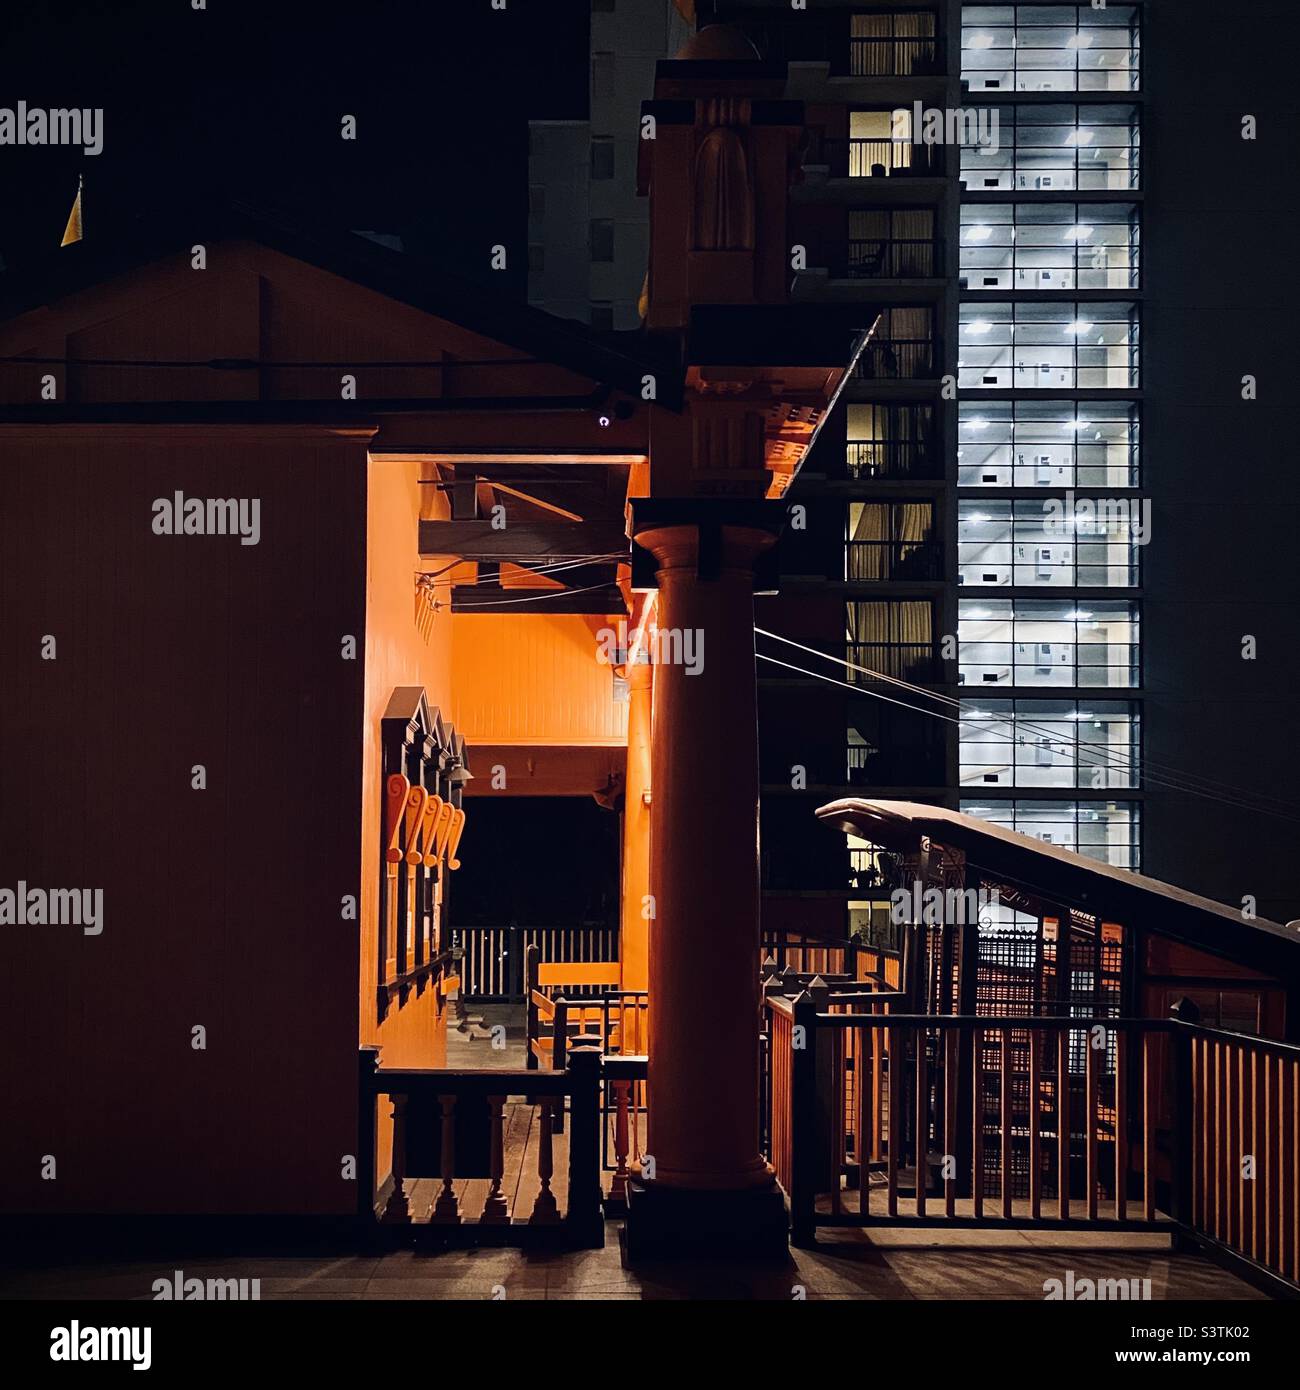 LOS ANGELES, CA, SETTEMBRE 2021: Vista notturna della biglietteria arancione in cima alla funicolare Angels' Flight in centro con scale illuminate e ascensore lobby dell'edificio di appartamenti sullo sfondo Foto Stock